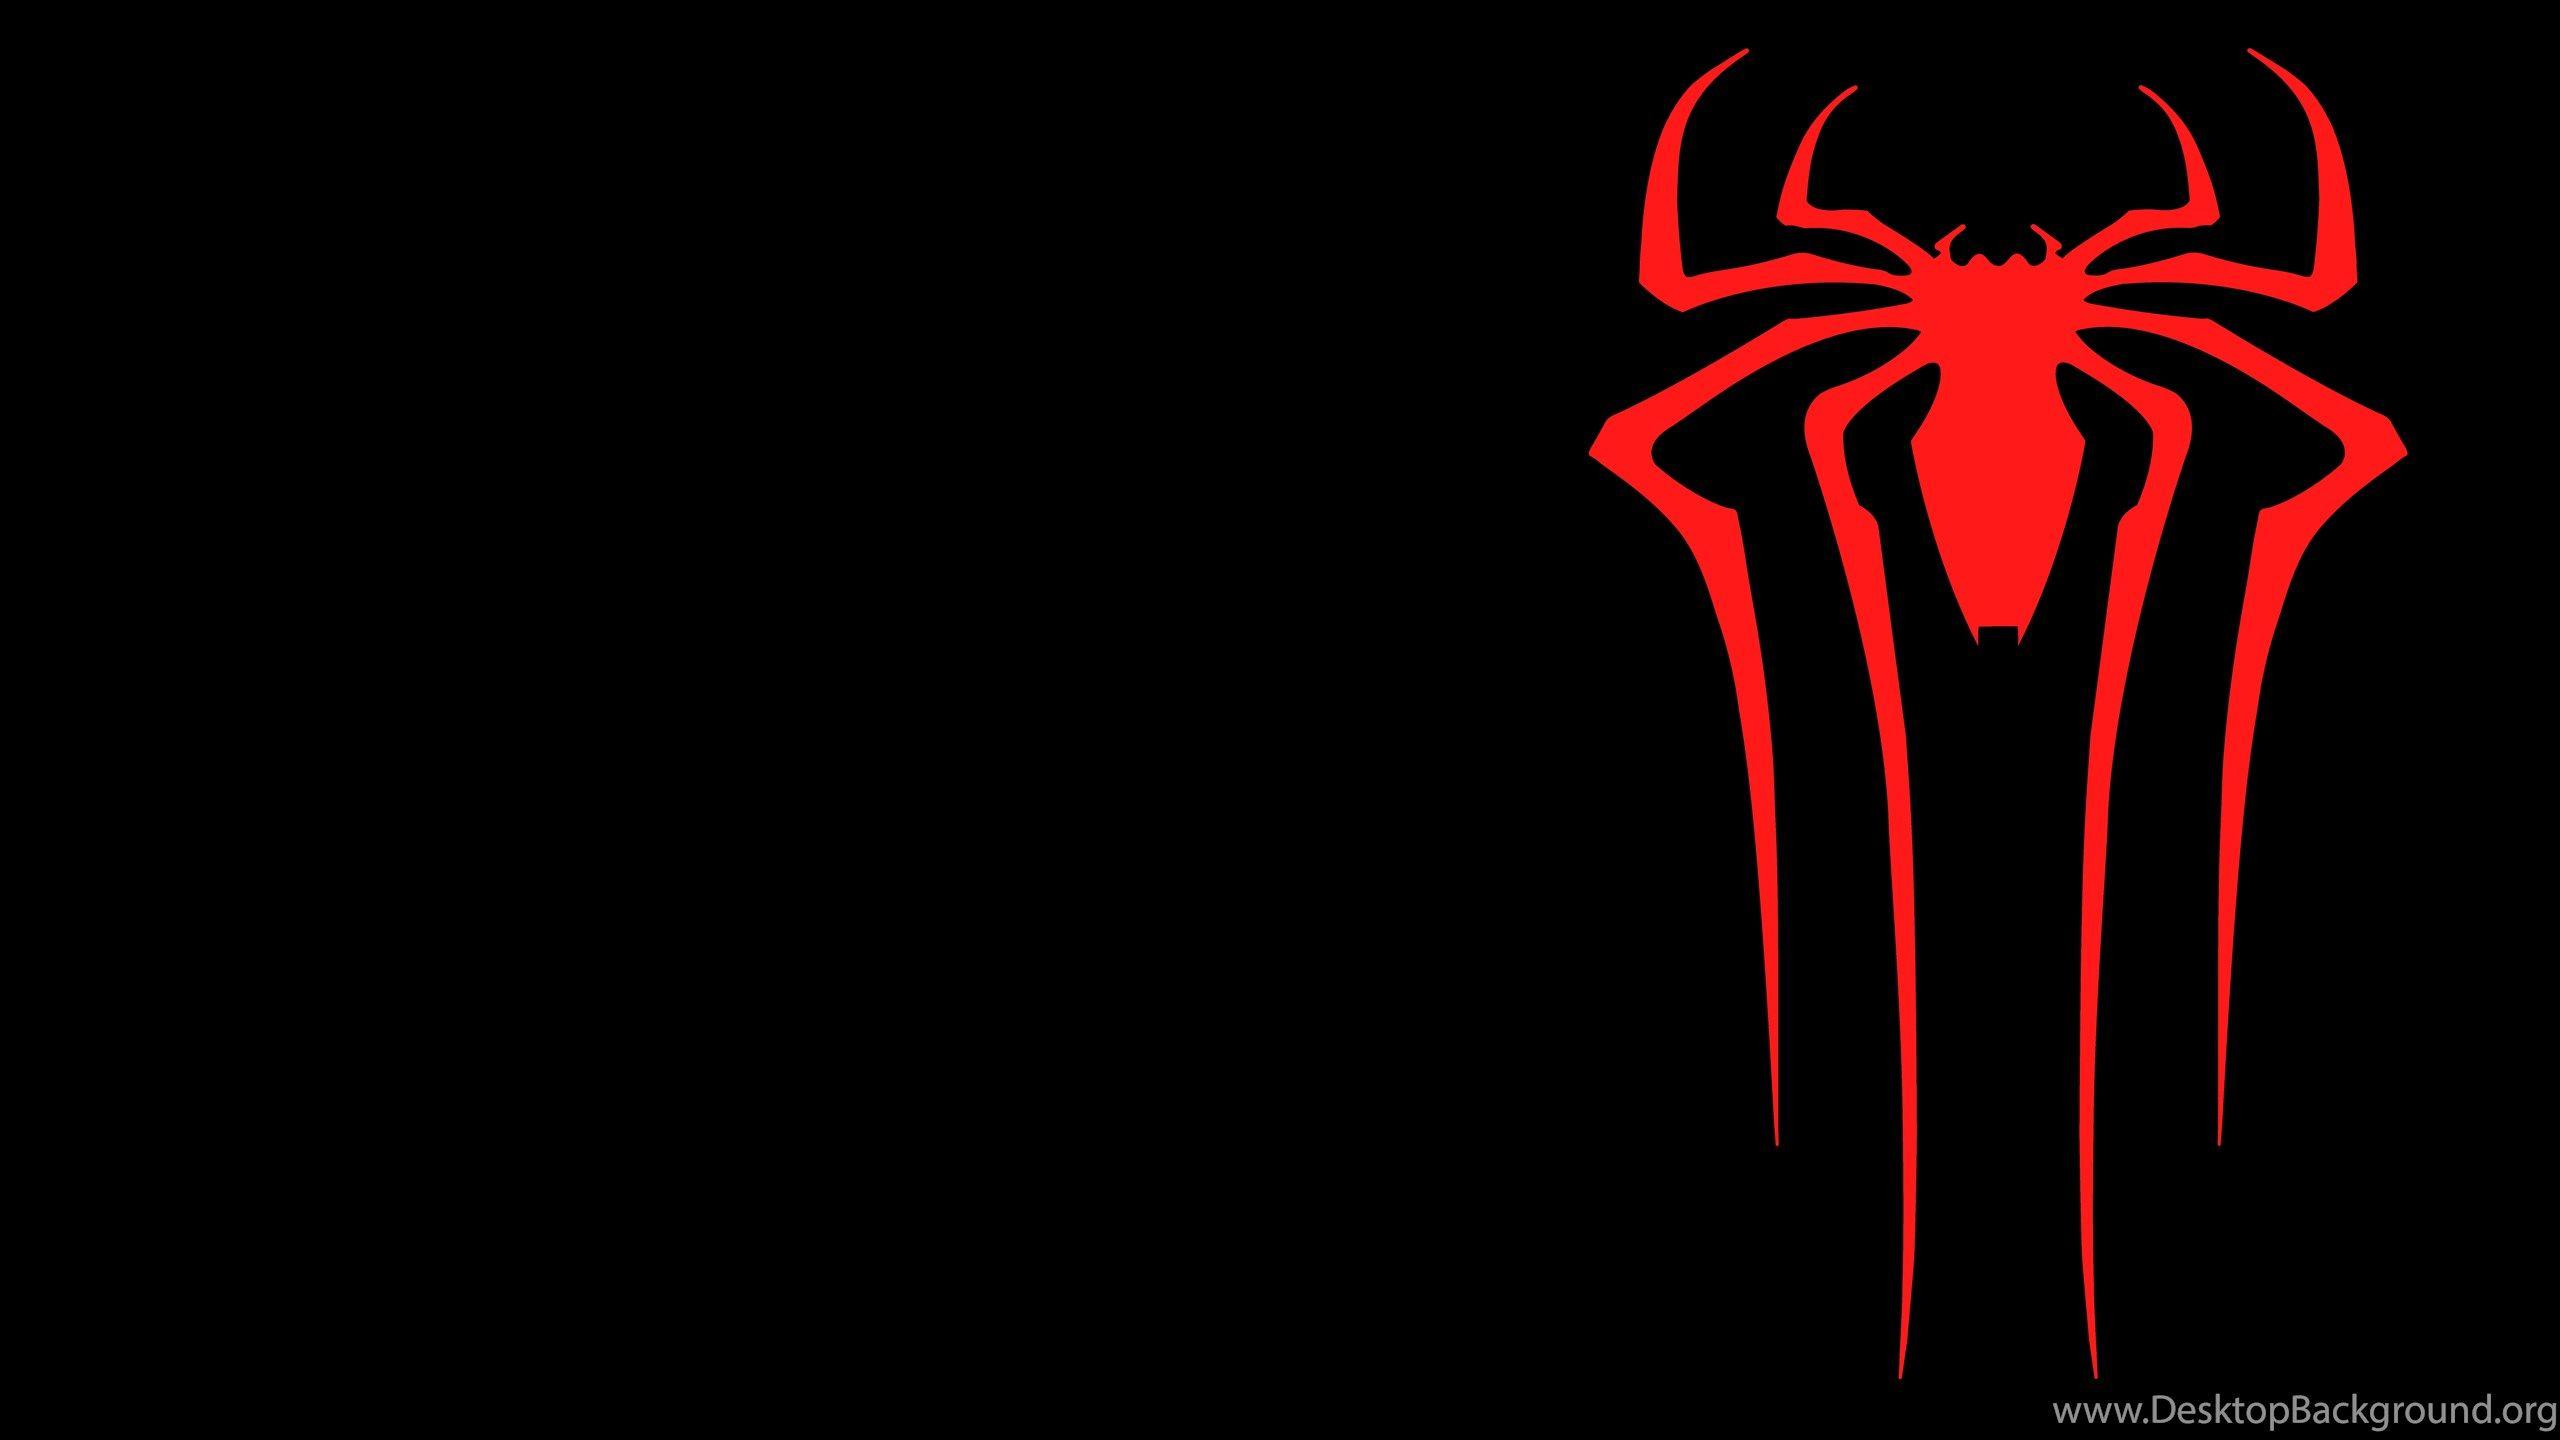 2560x1440 Hình nền khác: Hình nền Logo người nhện Chất lượng HD